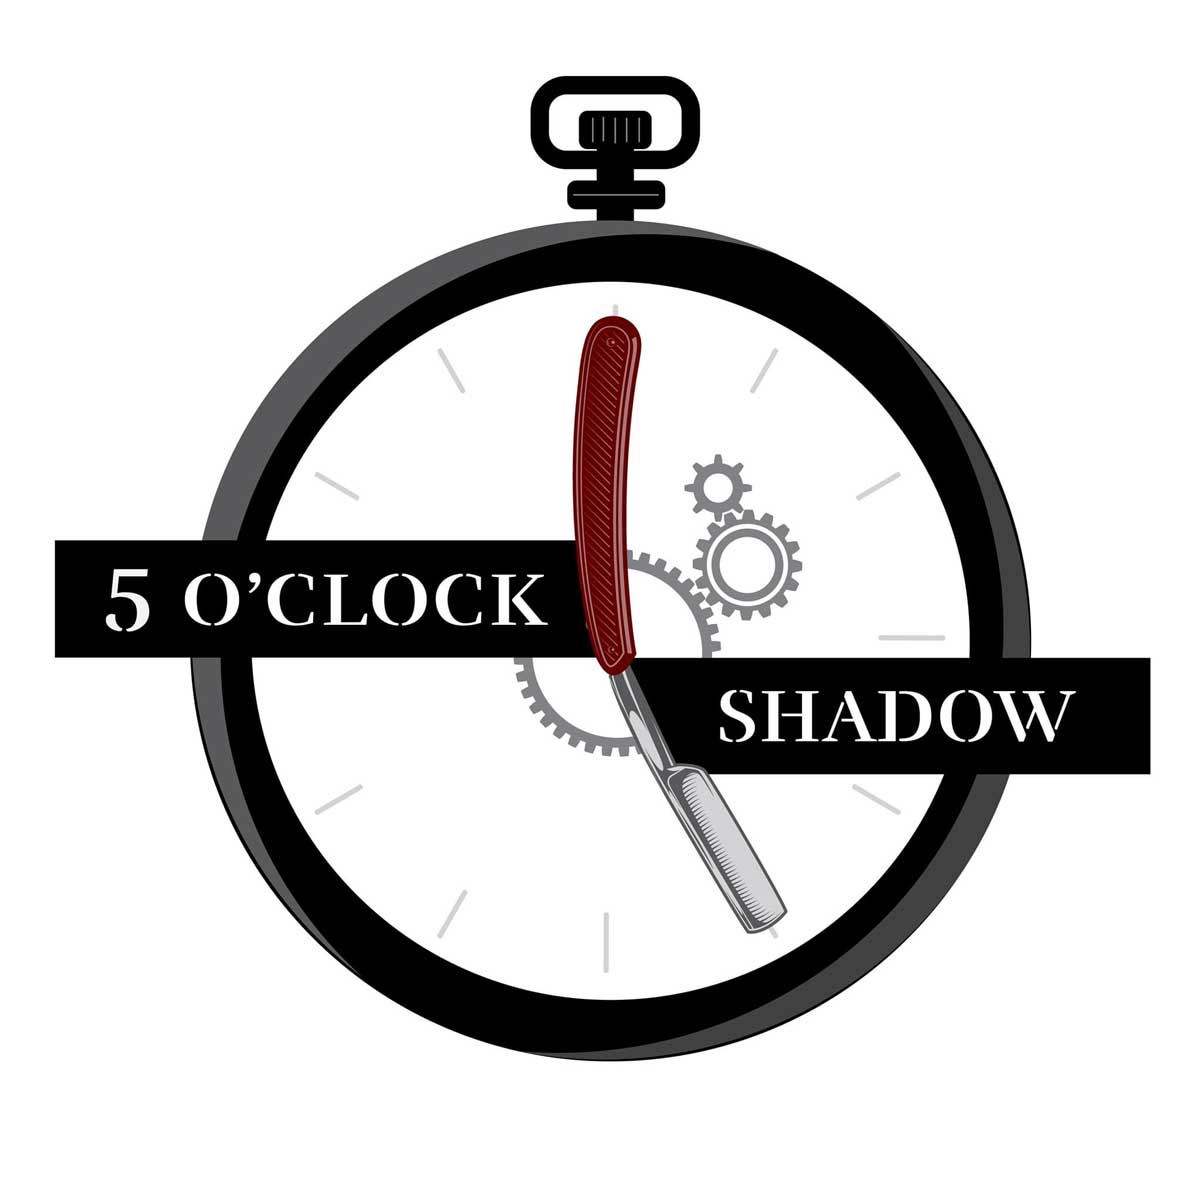 5 O'clock Shadow logo